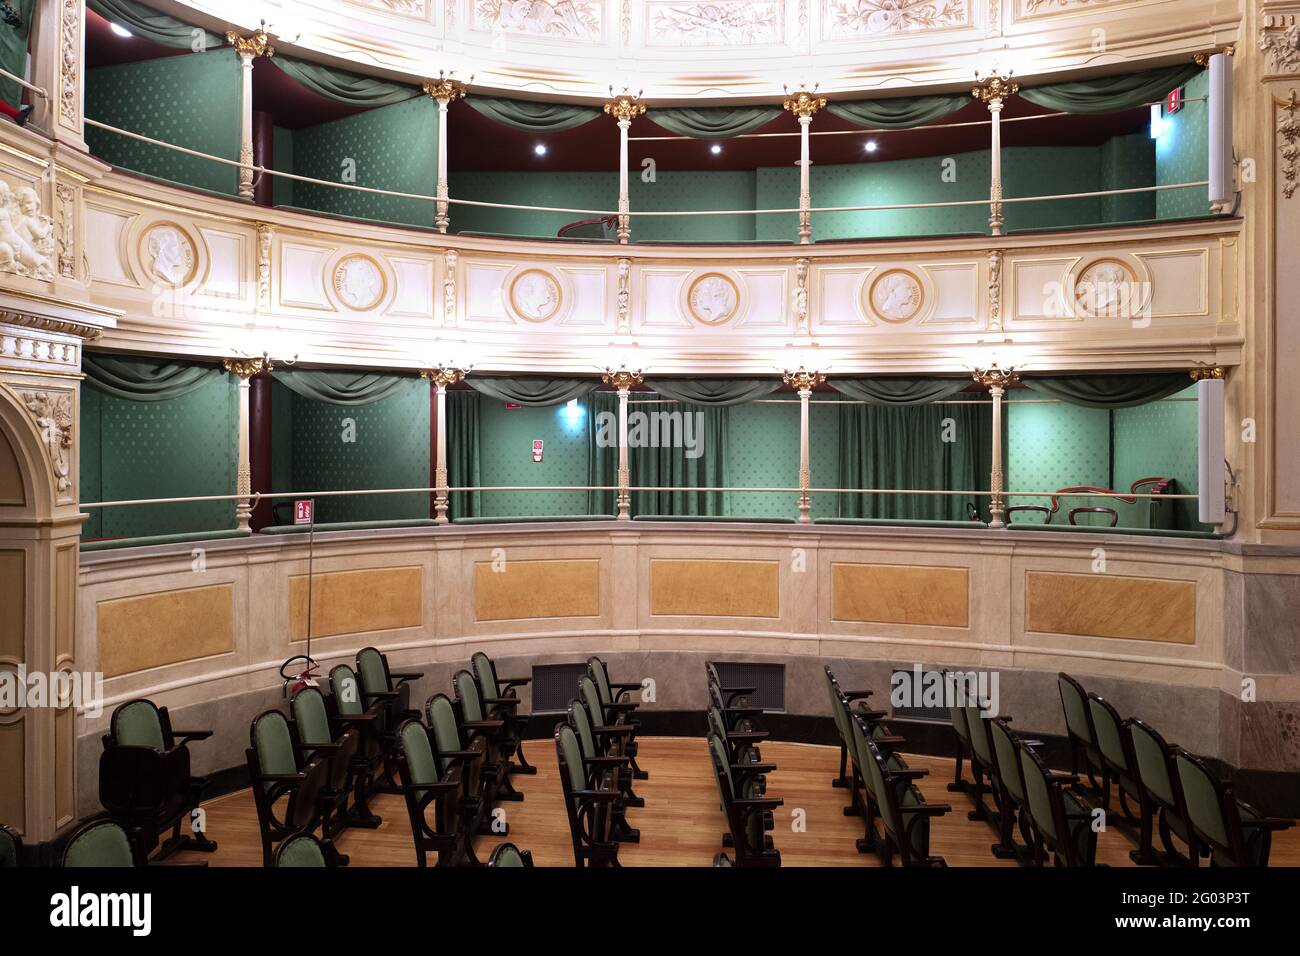 Interni rinnovati dello storico teatro Gerolamo fondato nel 1868, a Milano. Foto Stock